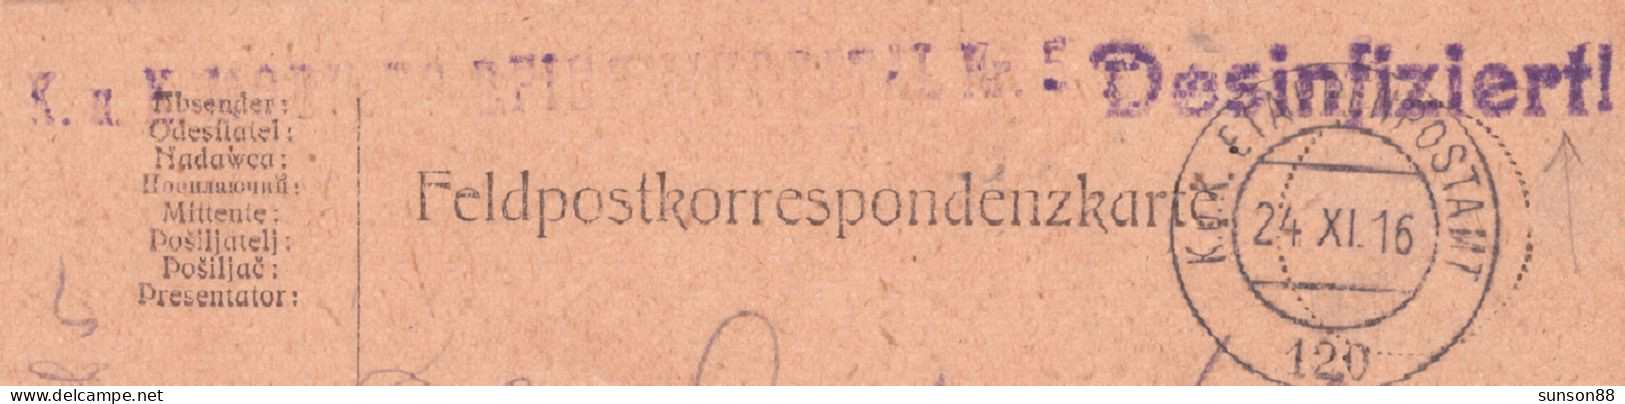 Disinfected Fieldpostcard 1916.XI.24.  Violet Linear Cachet : Desinfiziert!   “K.u.K. Mobiles Epidiespital Nr.5 - Santé